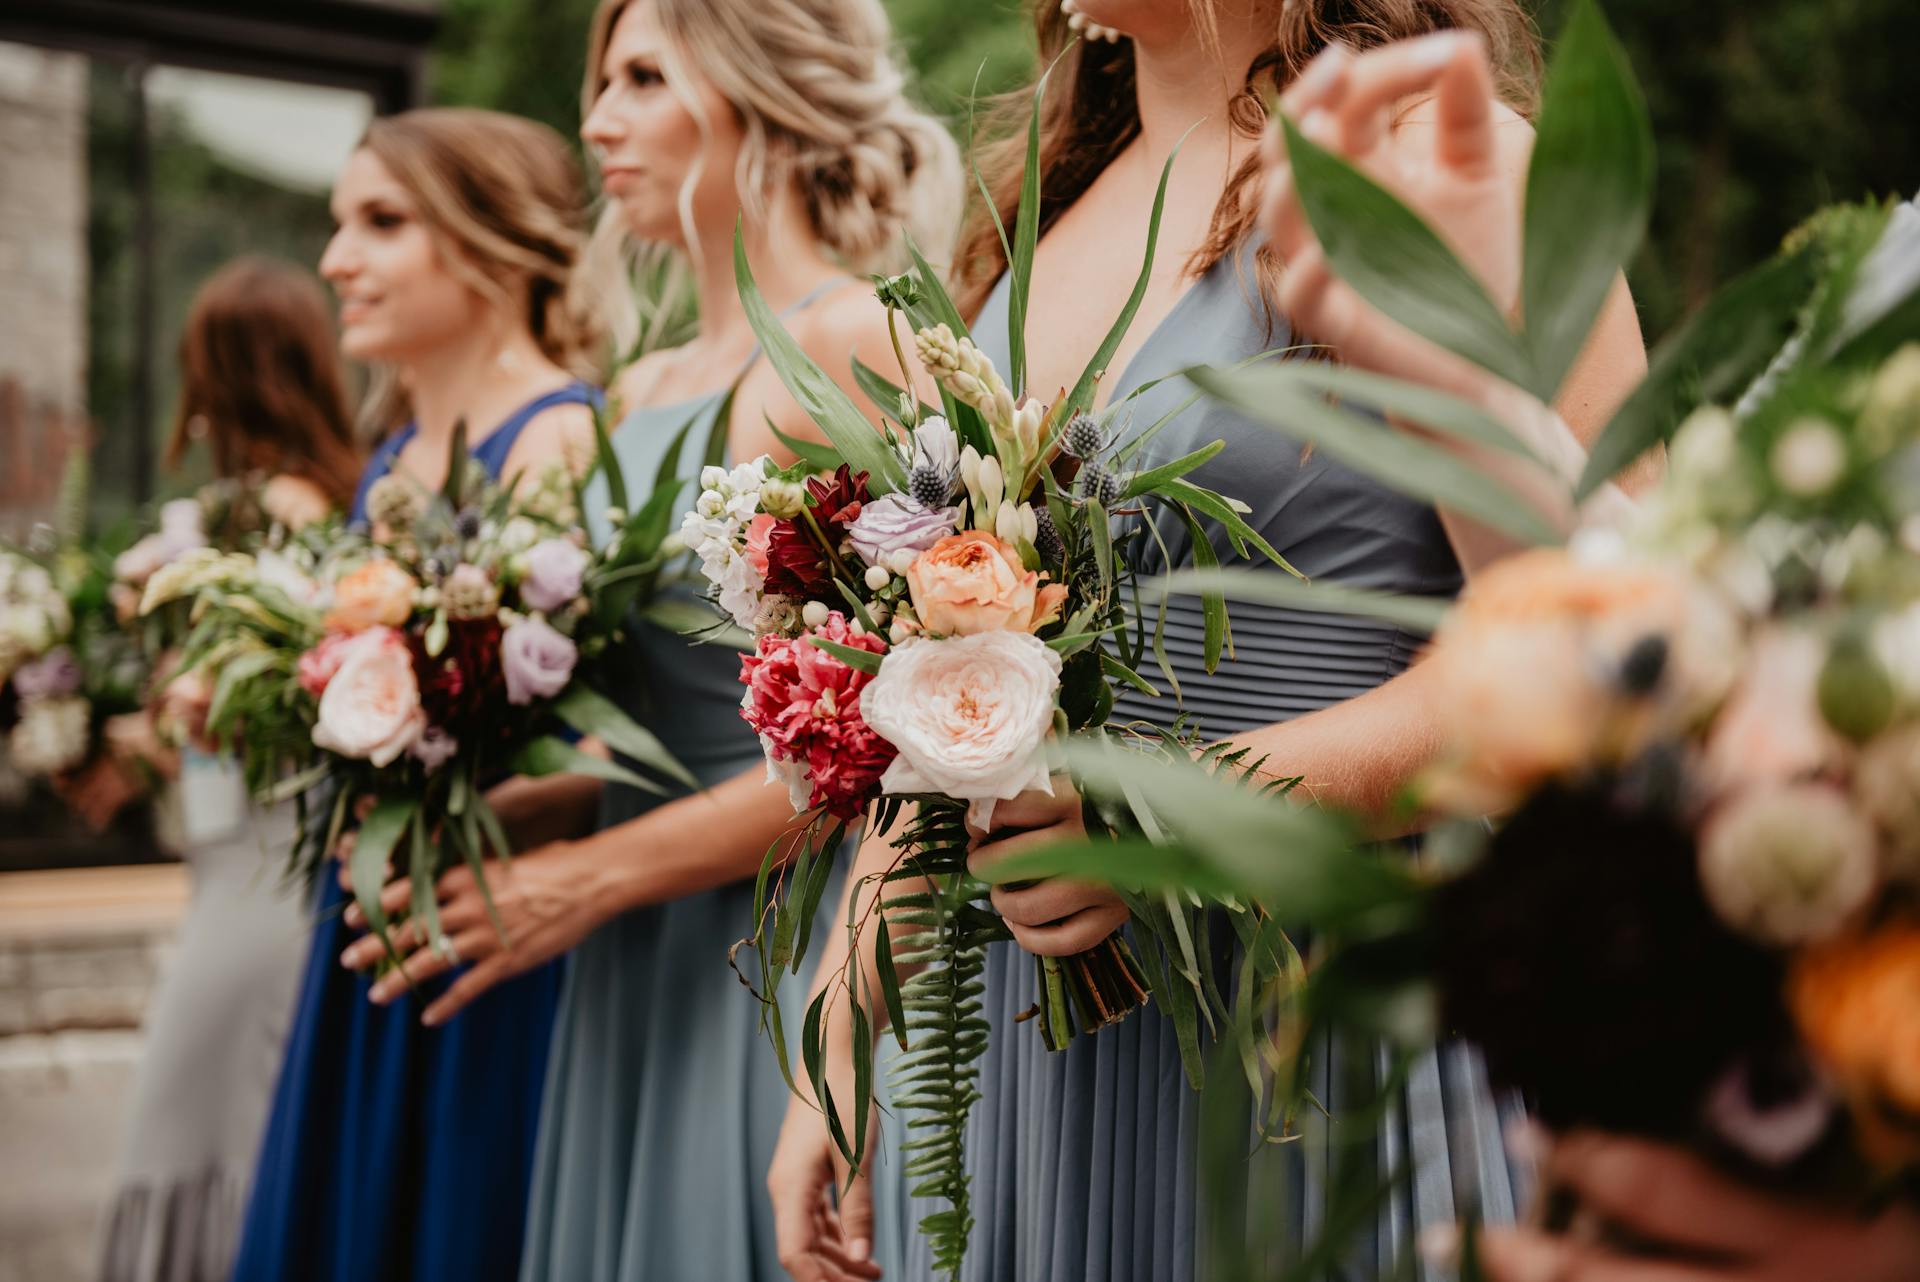 Brautjungfern halten Blumen am Hochzeitstag | Quelle: Pexels